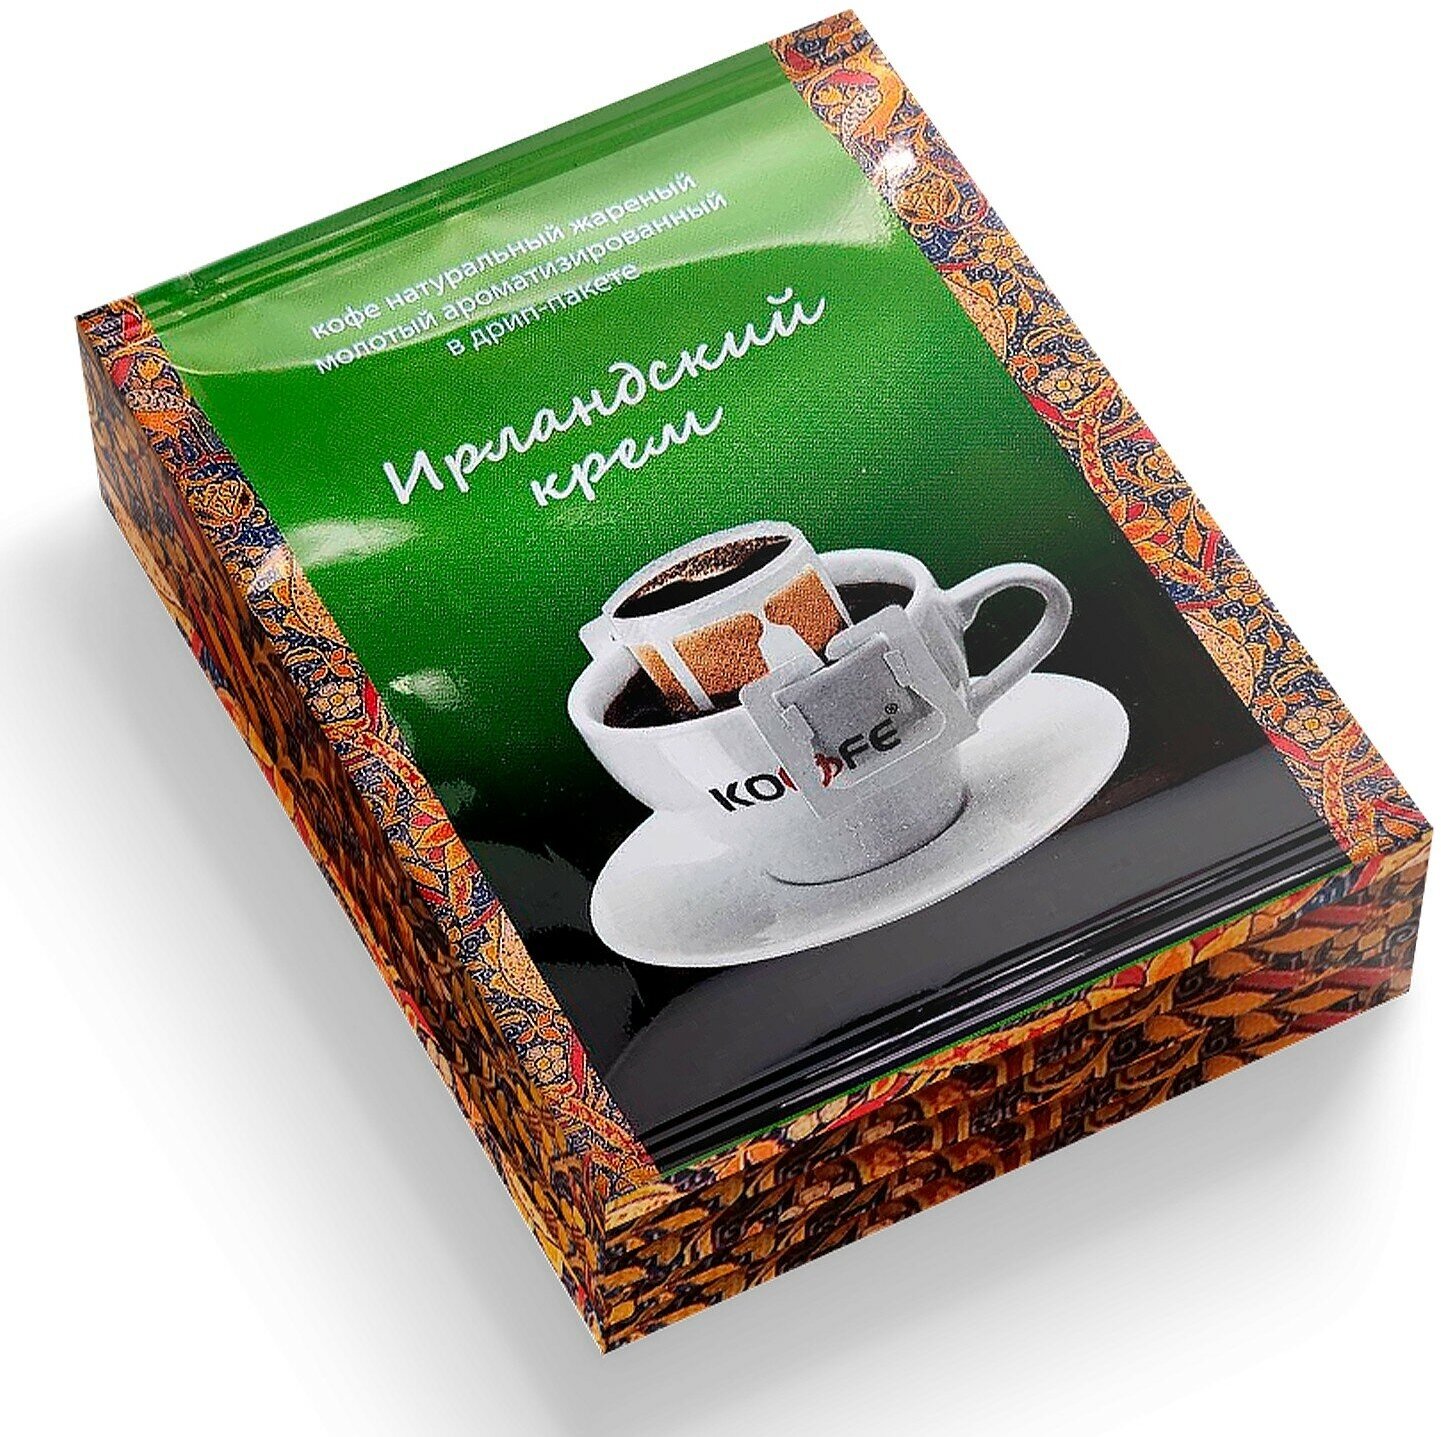 Молотый кофе в дрип-пакетах Ирландский крем, ароматизированный, 100% Арабика, 15 шт.* 8г.